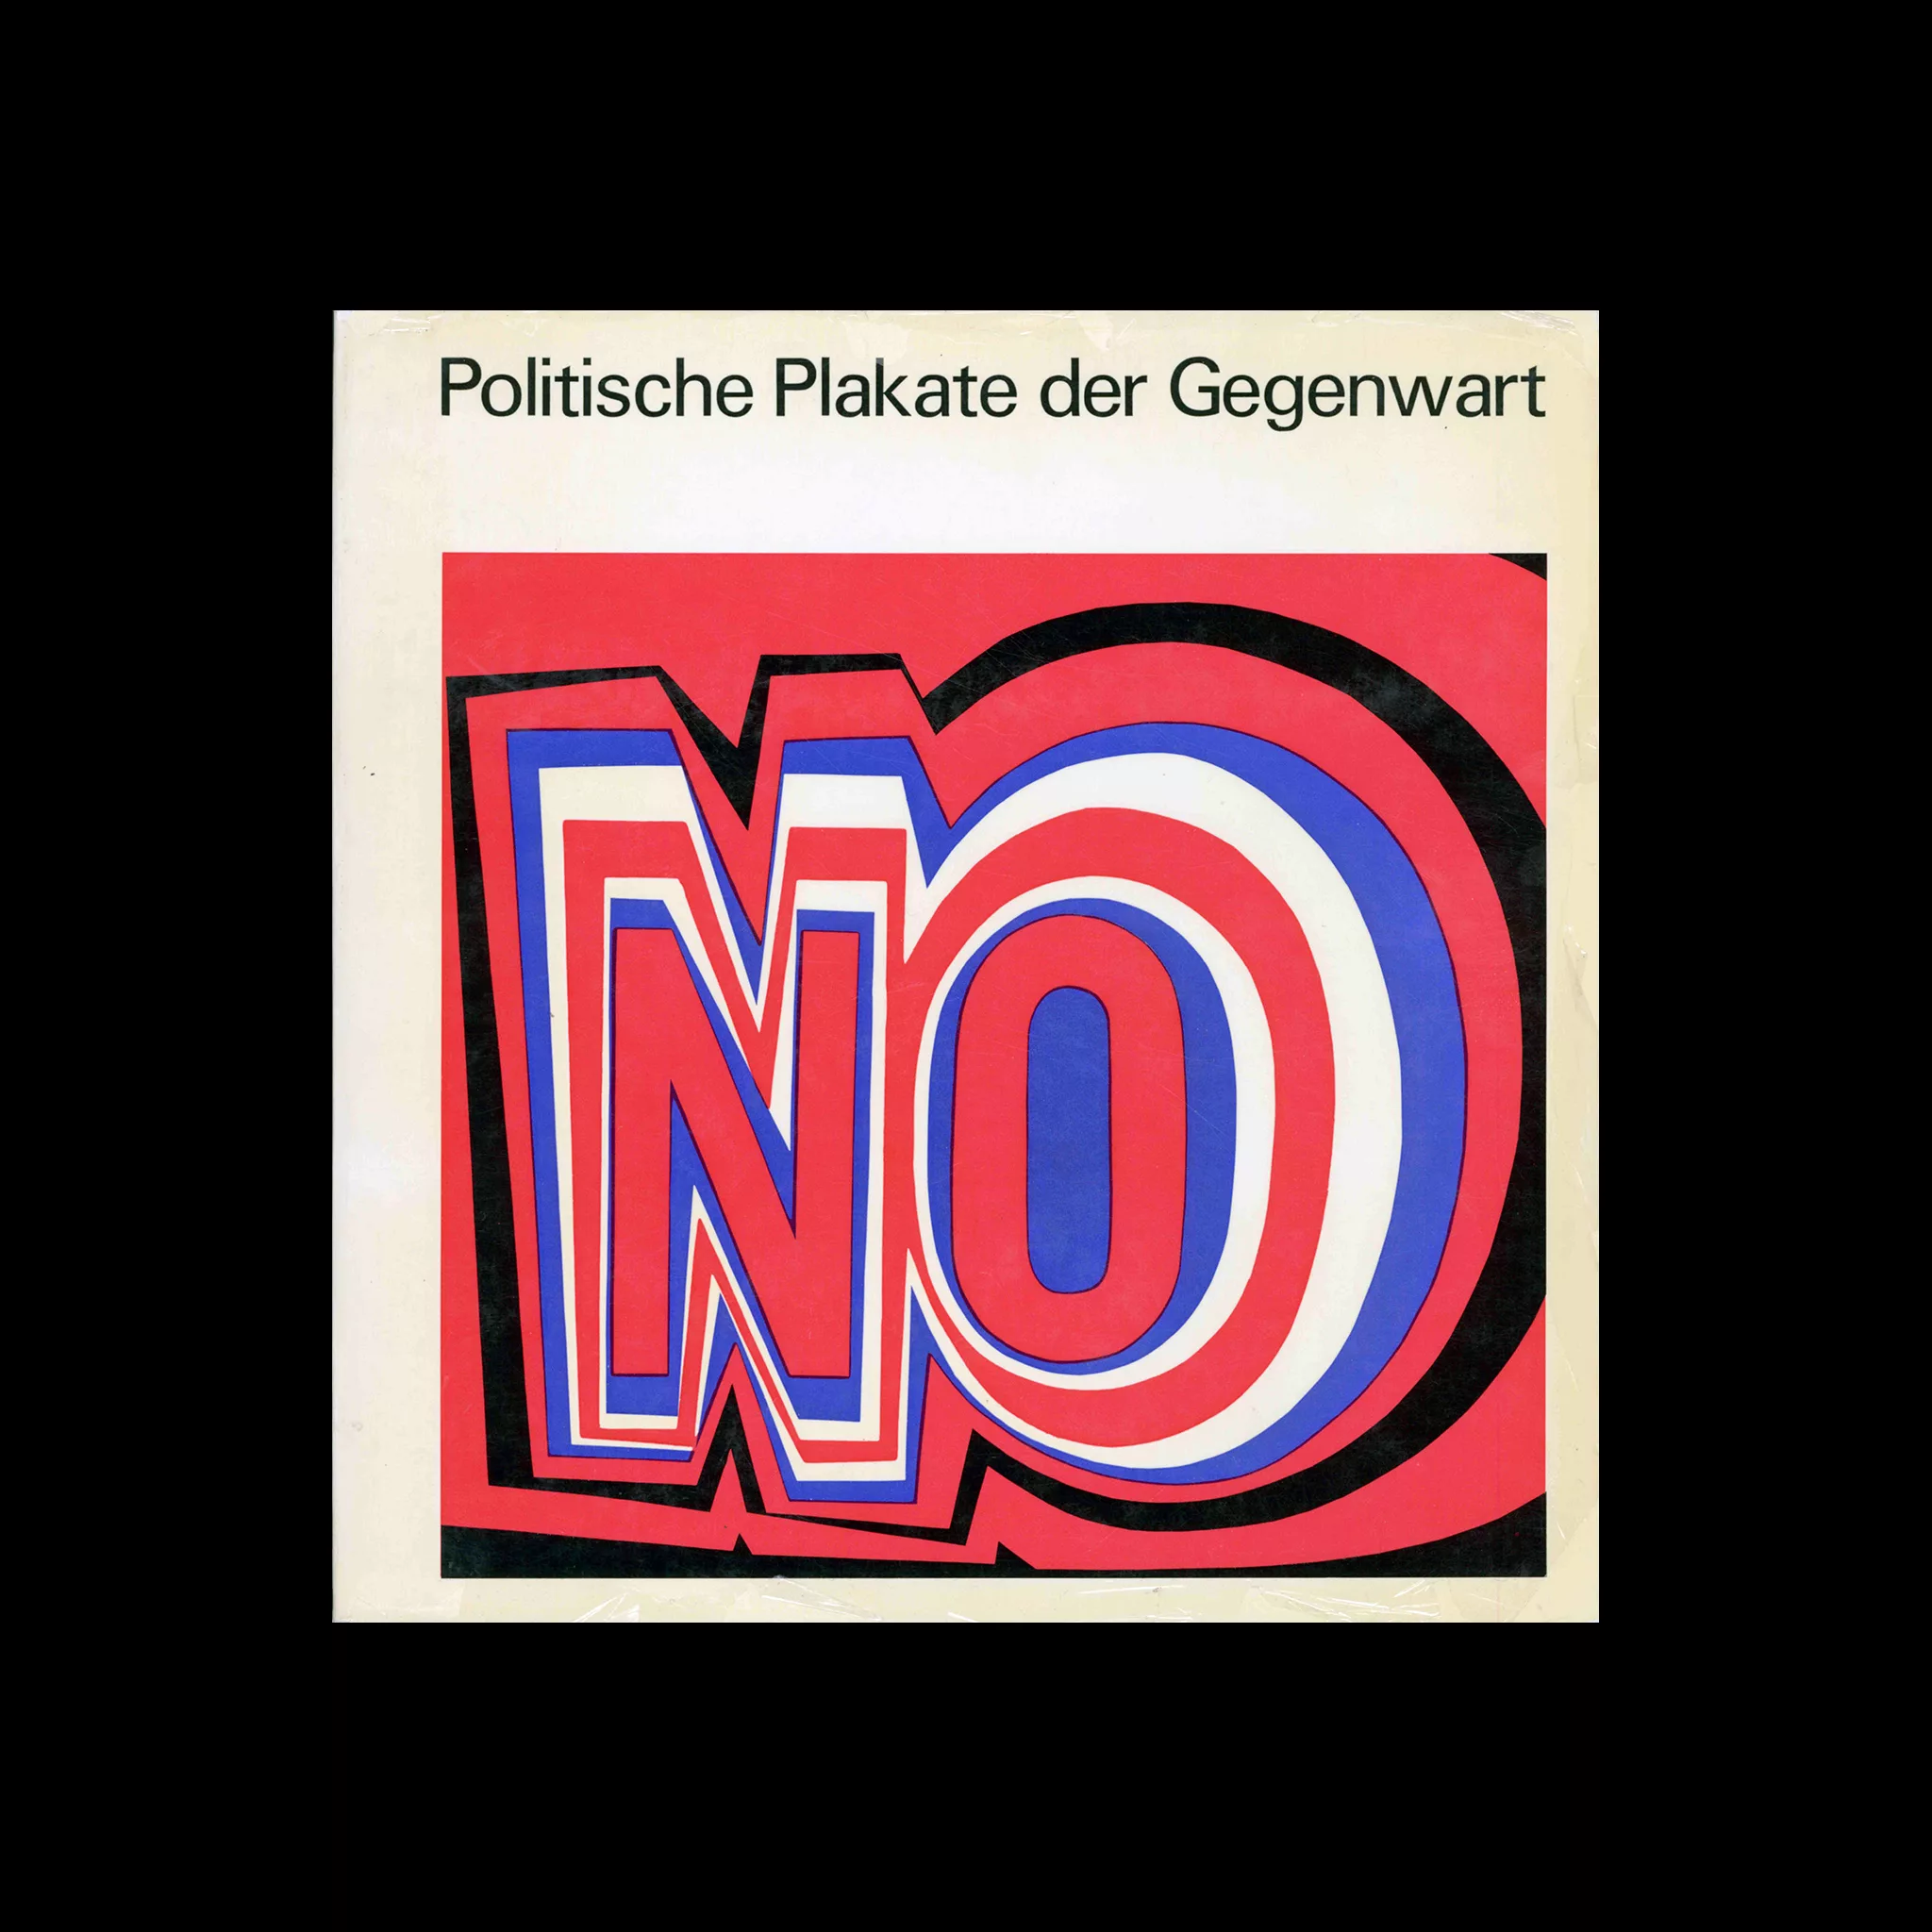 Politische Plakate der Gegenwart, 1971